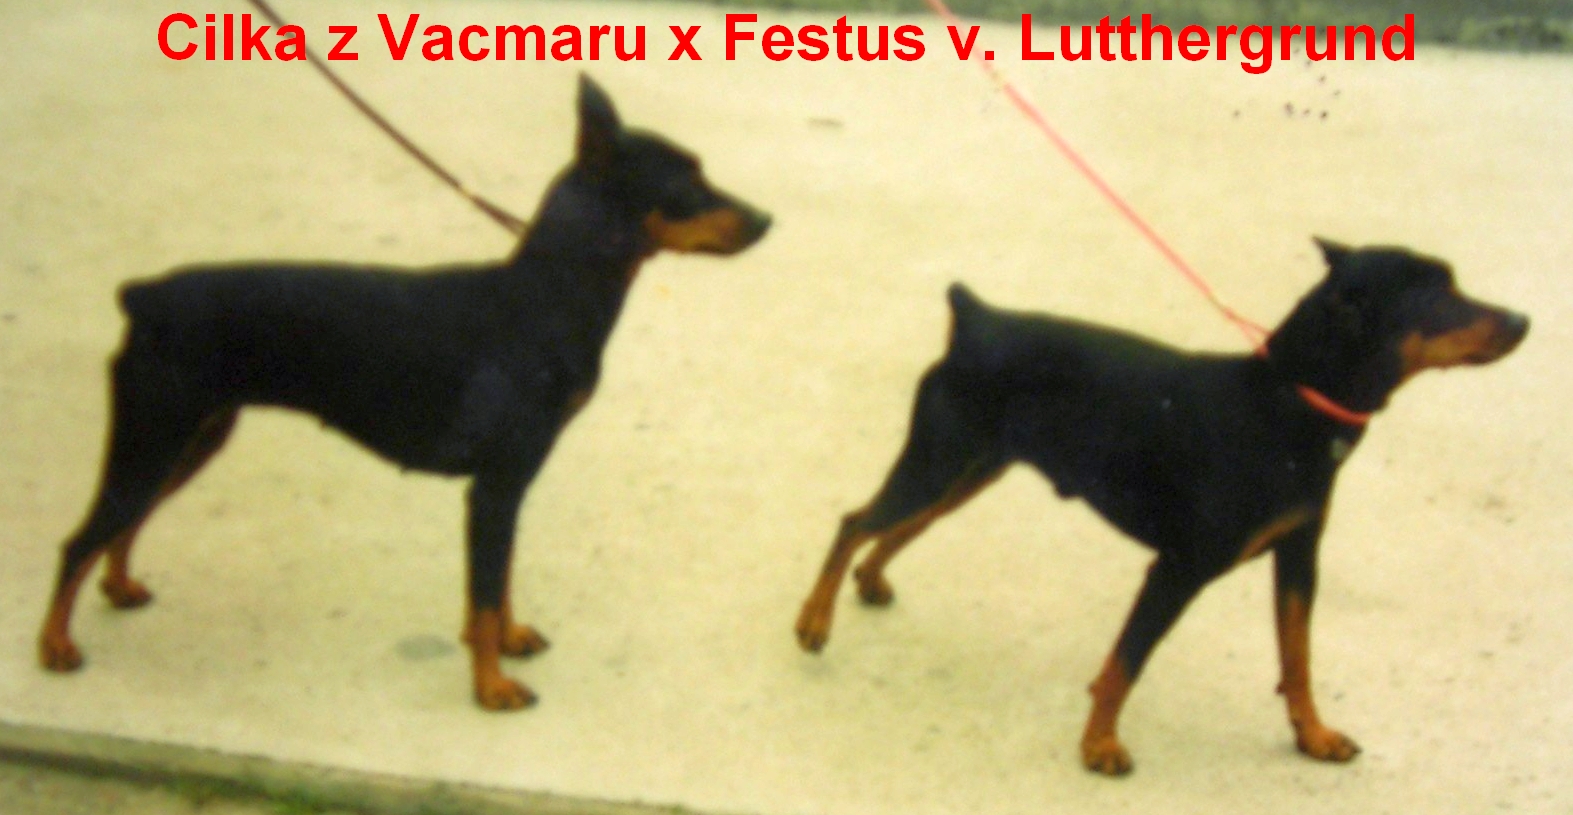 Chovný pár Cilka z Vacmaru x Festus v. Lutthergrund